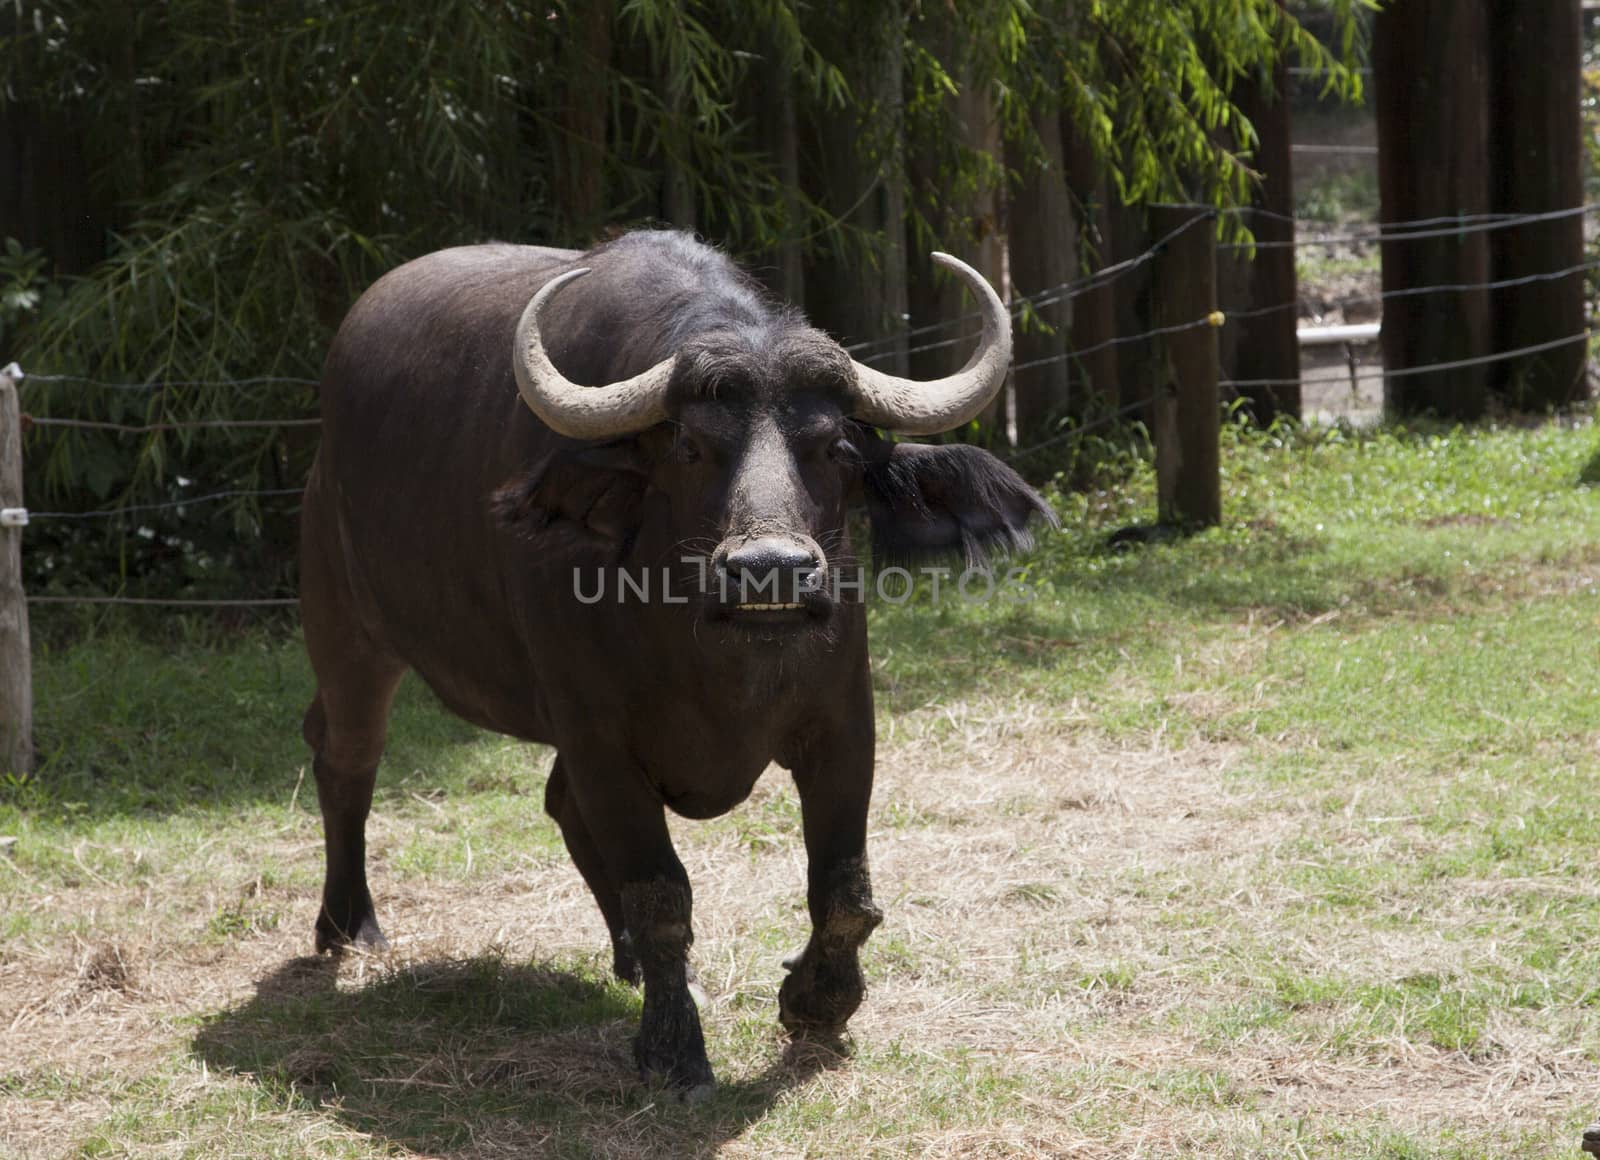 Annoyed buffalo charging toward habitat fence